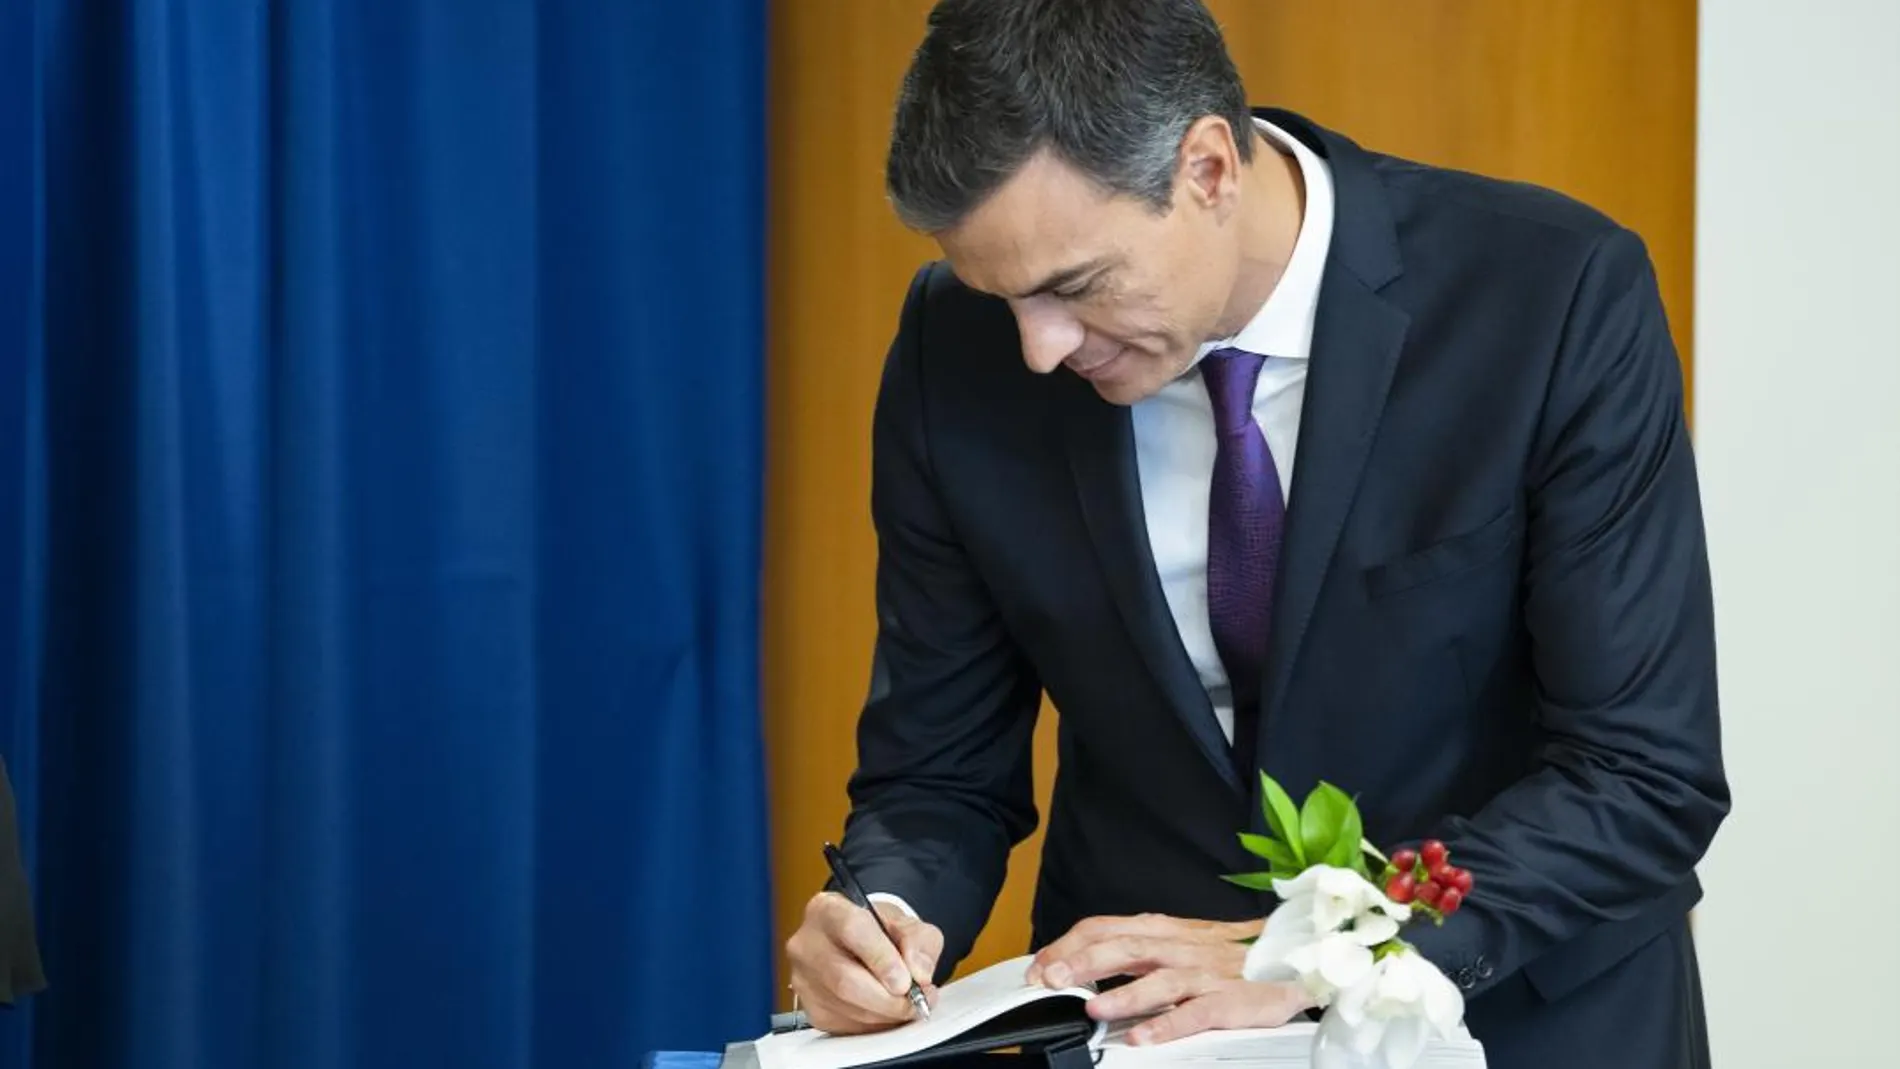 El presidente del Gobierno español, Pedro Sánchez, firma un libro de visitas tras ser recibido por el Secretario General de la ONU, Antonio Guterres./ Ap